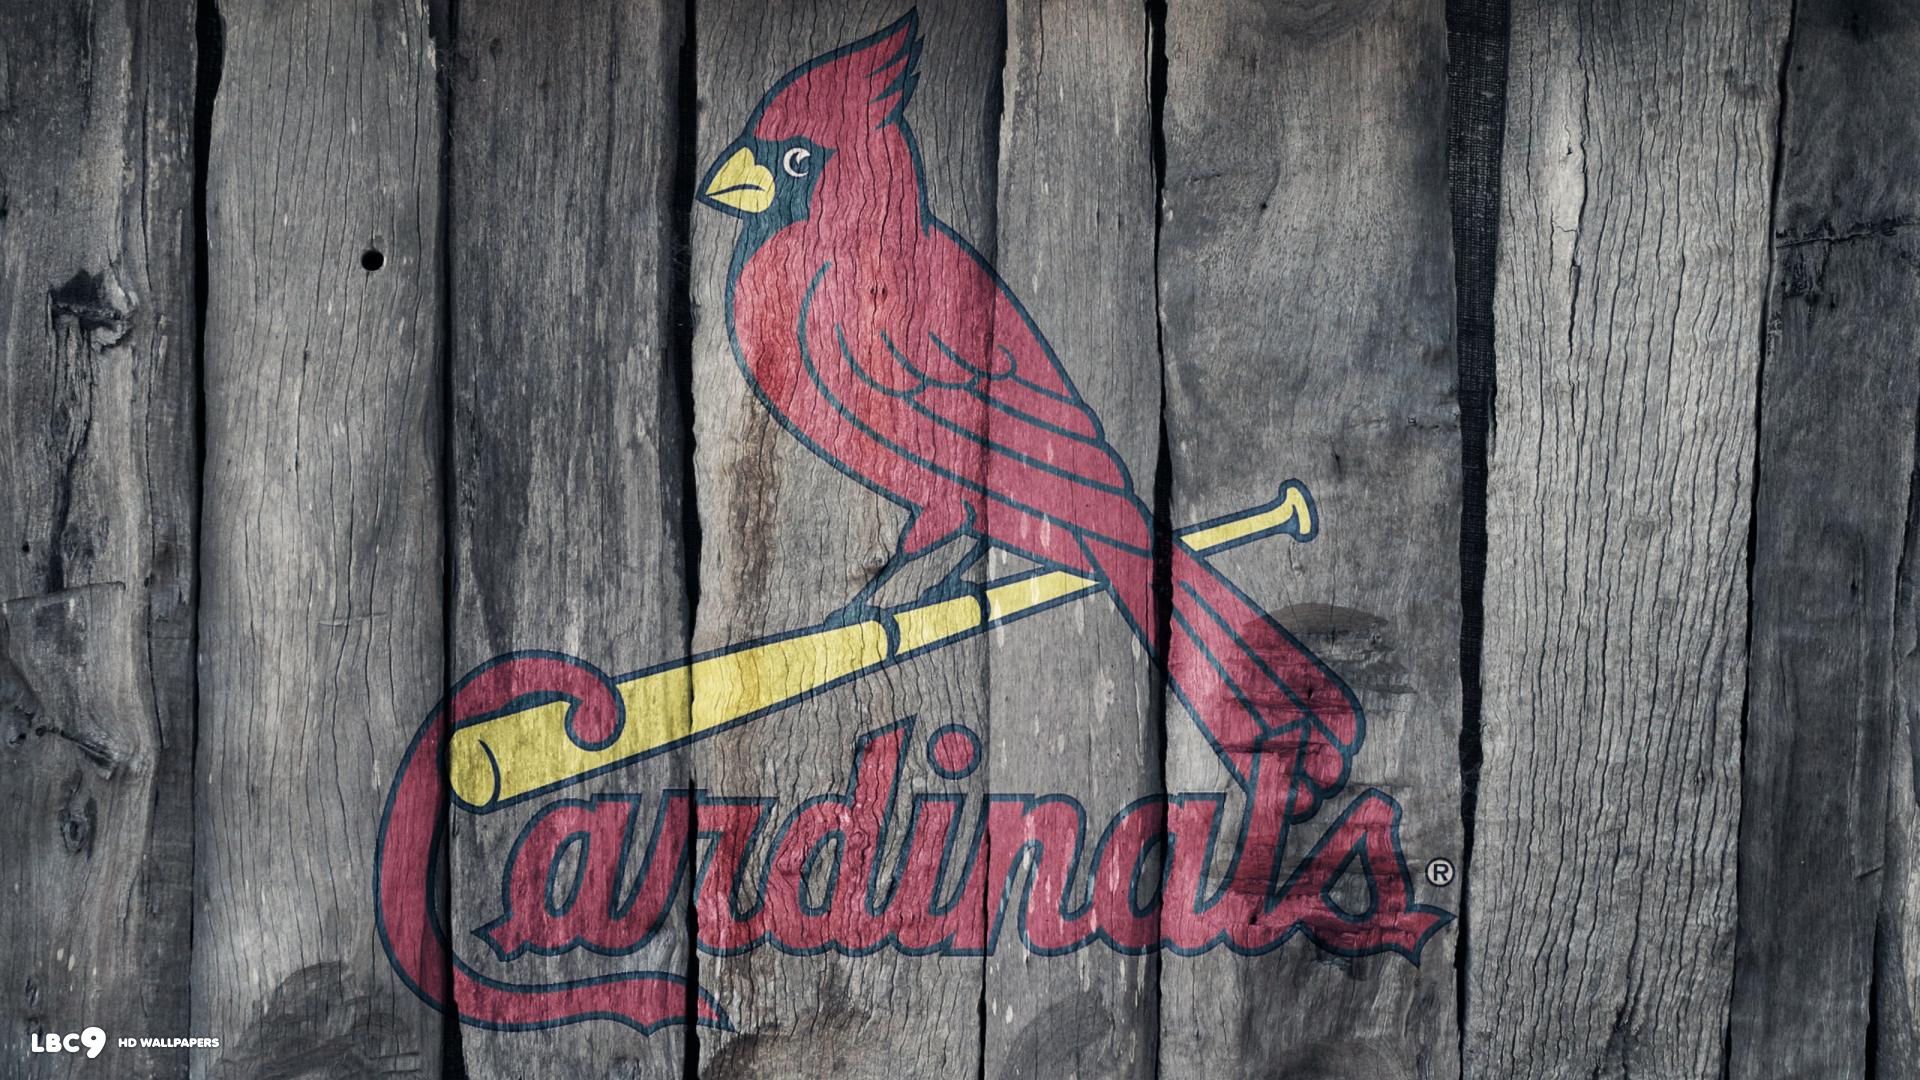 St Louis Cardinals wallpaper 1920x1080